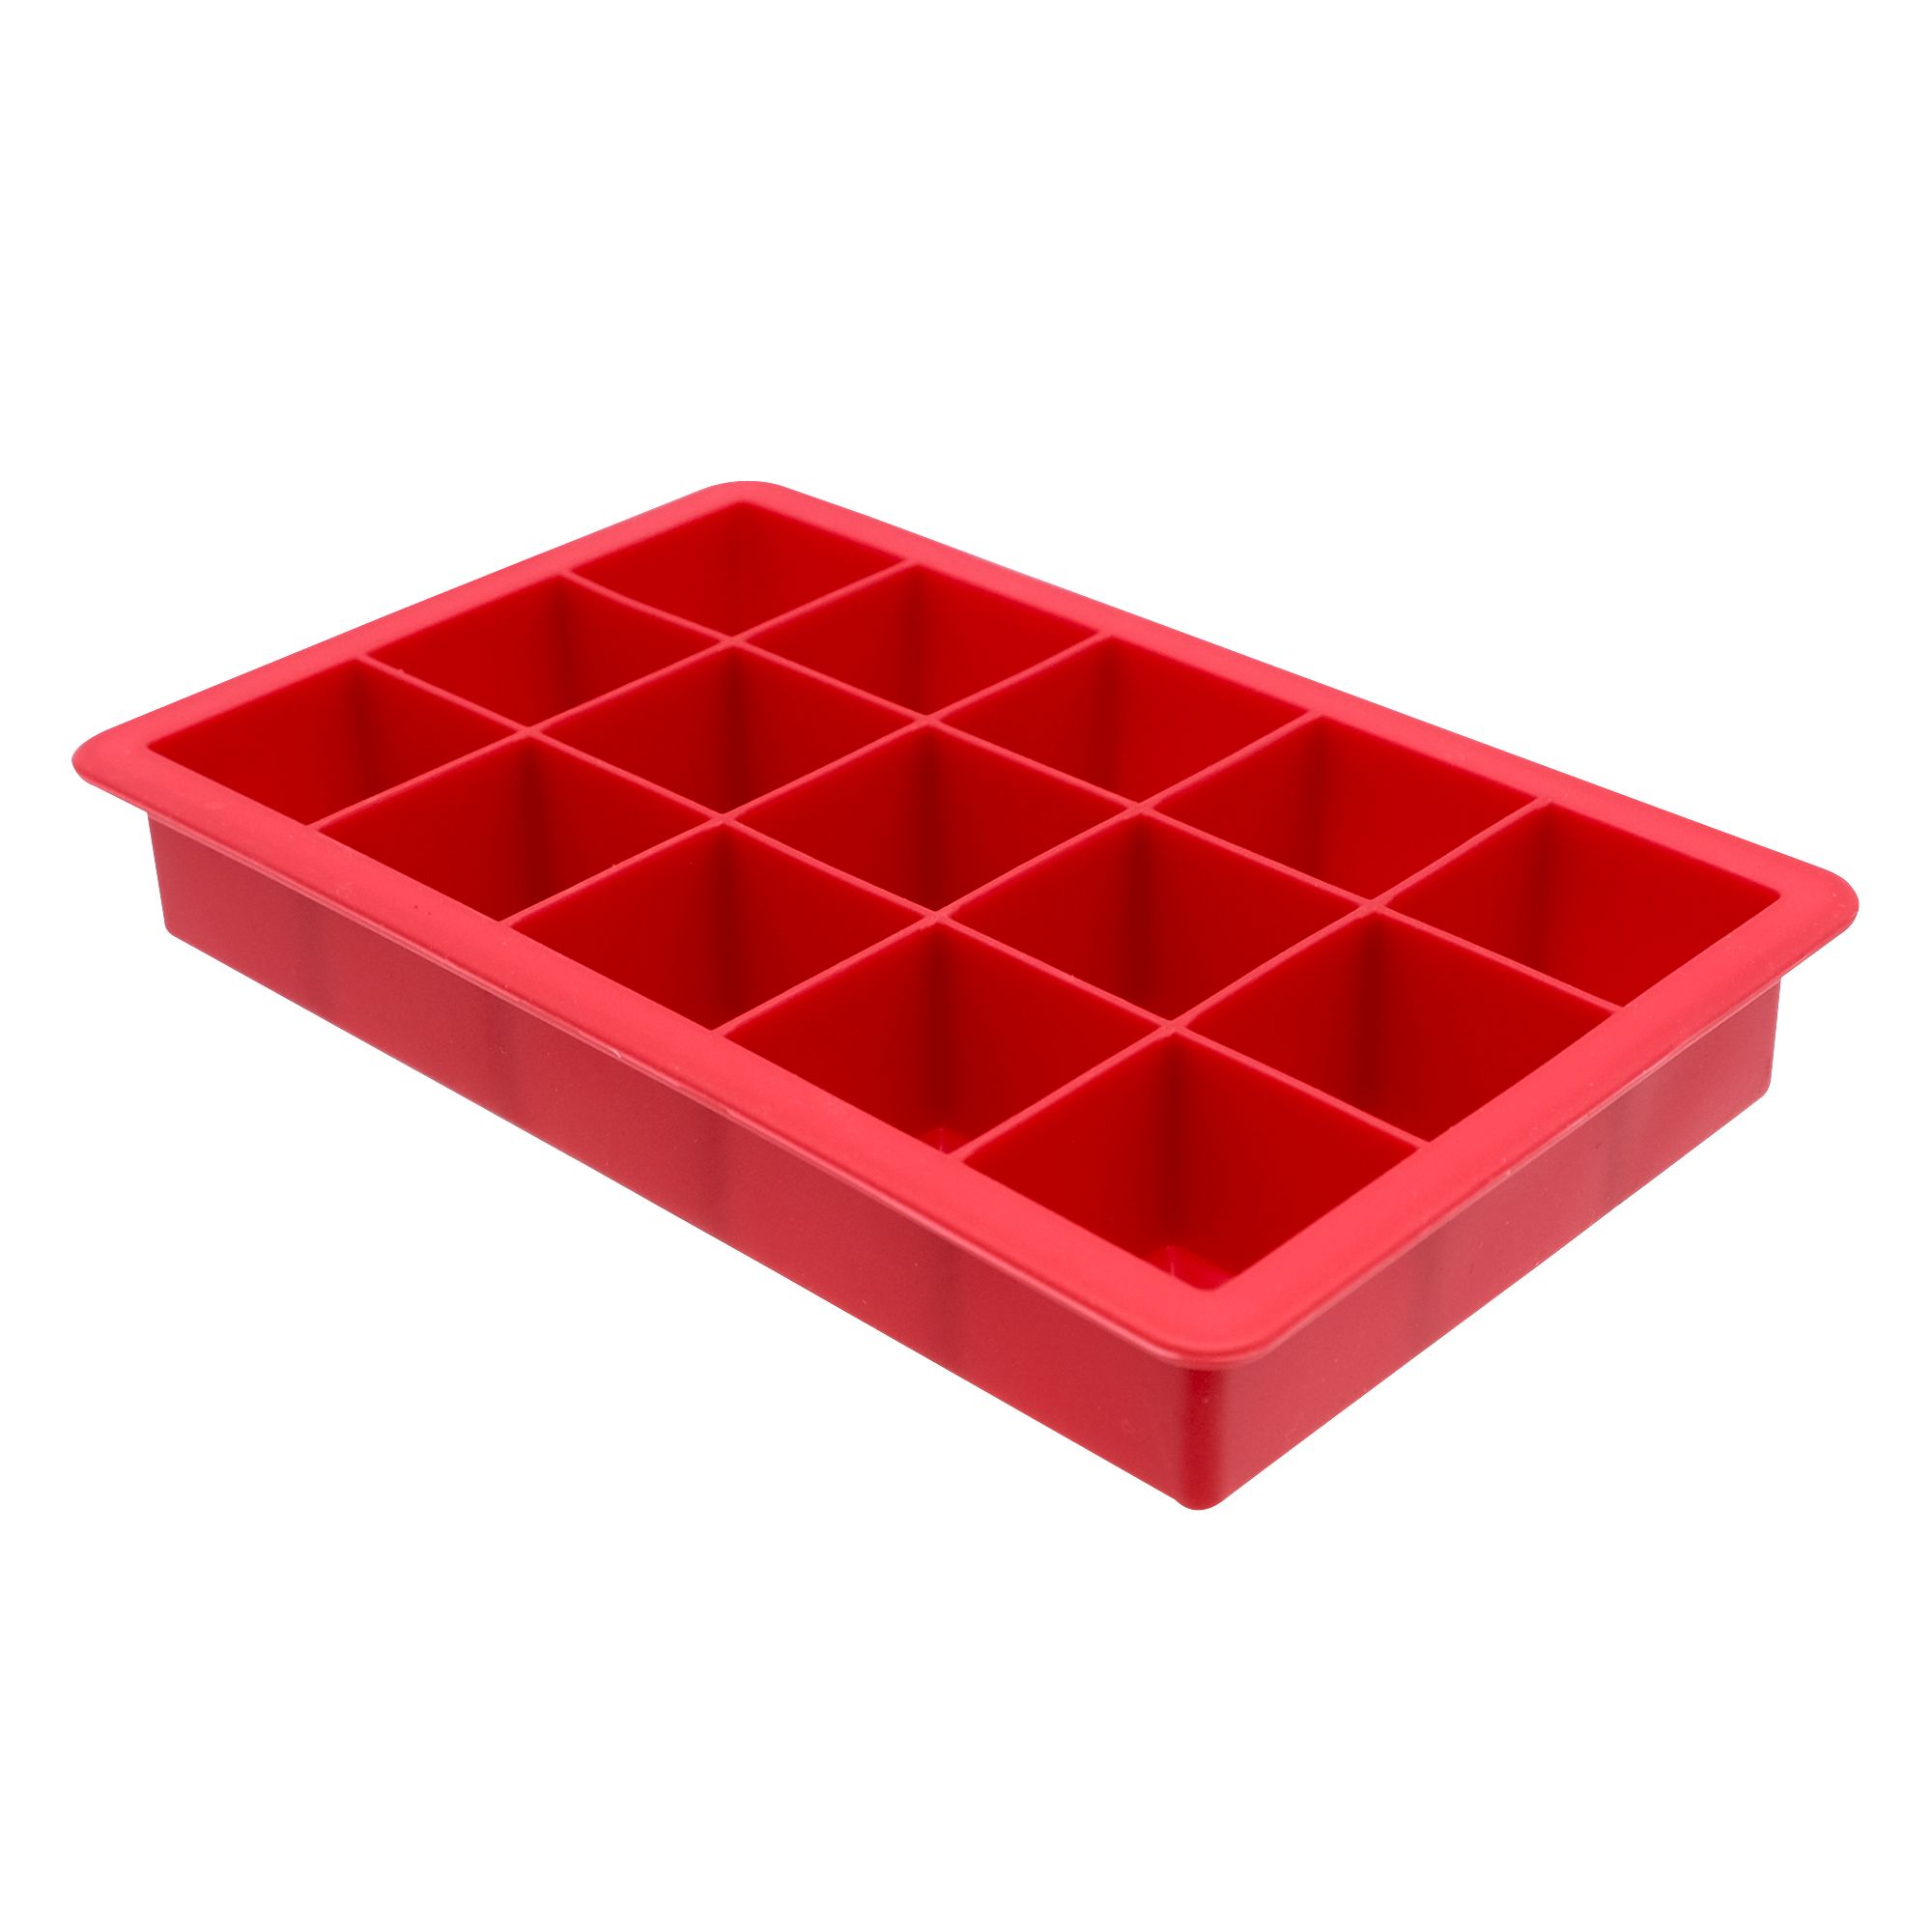 Moule à glaçons en silicone - 15 cubes